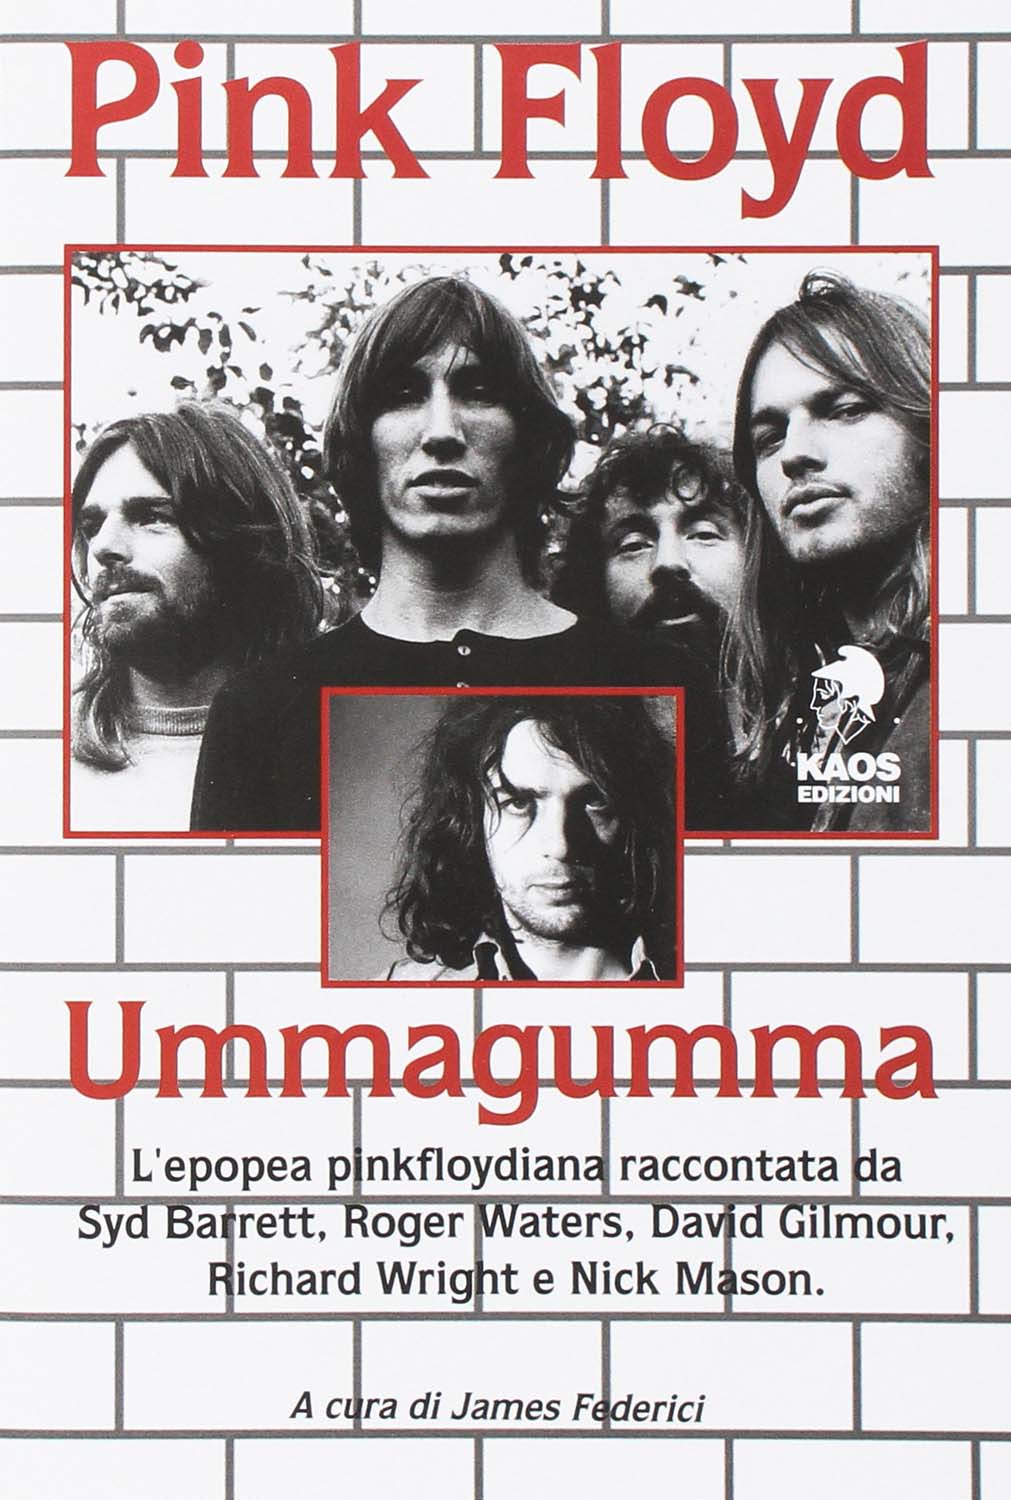 Libri Pink Floyd. Ummagumma NUOVO SIGILLATO, EDIZIONE DEL 18/10/2016 SUBITO DISPONIBILE